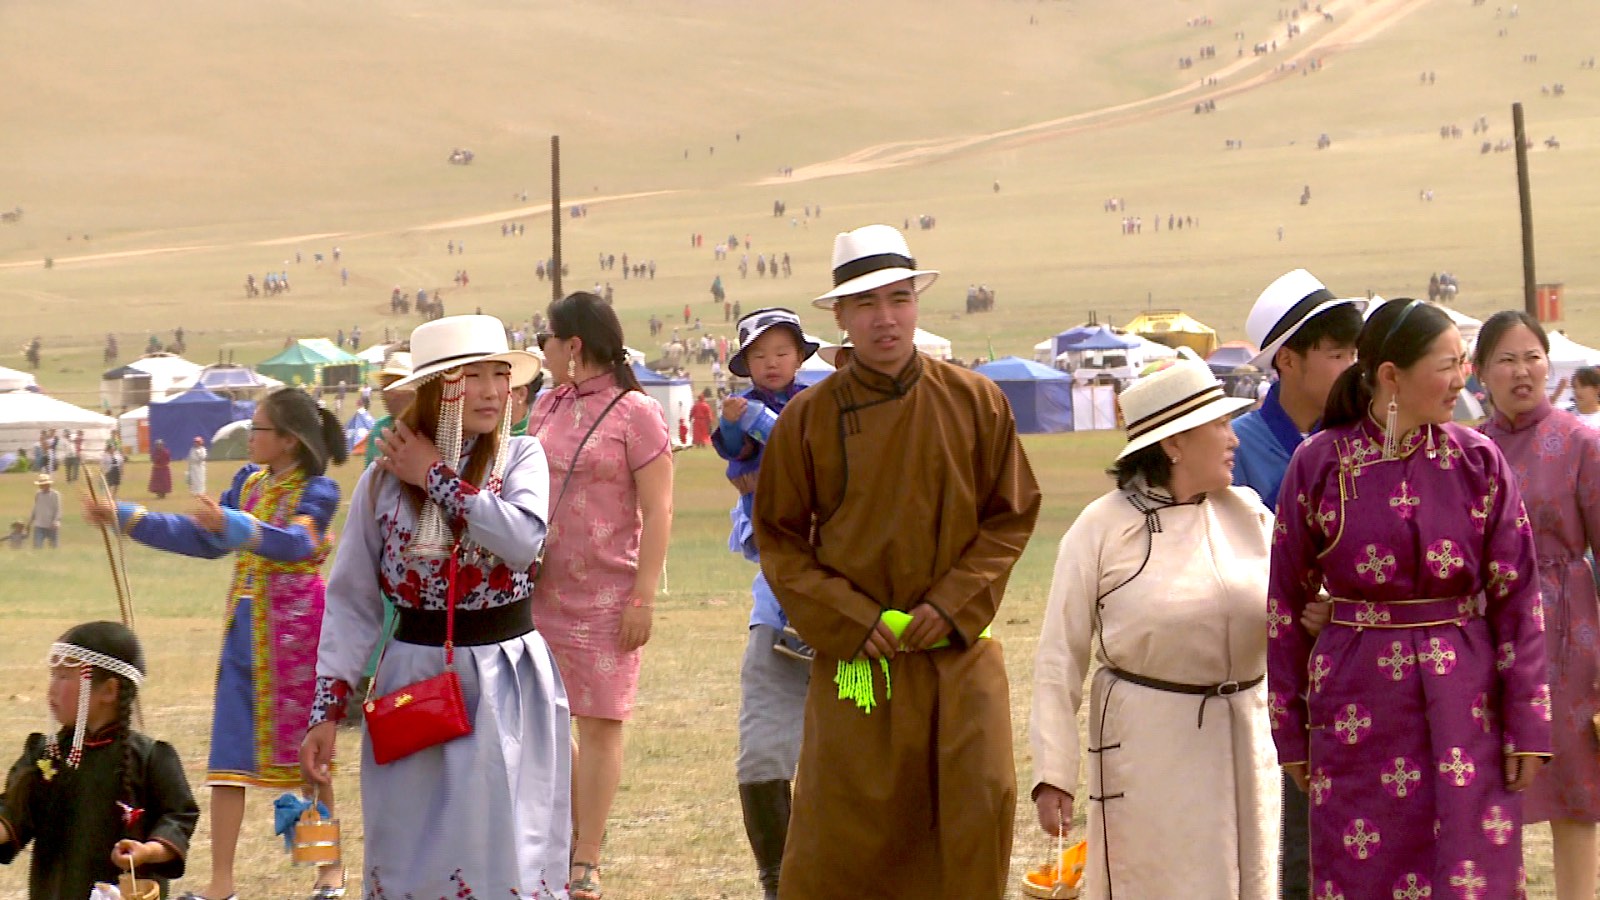 Naadam Festival Mongolei mit festlich gekleideten Menschen in traditioneller Kleidung